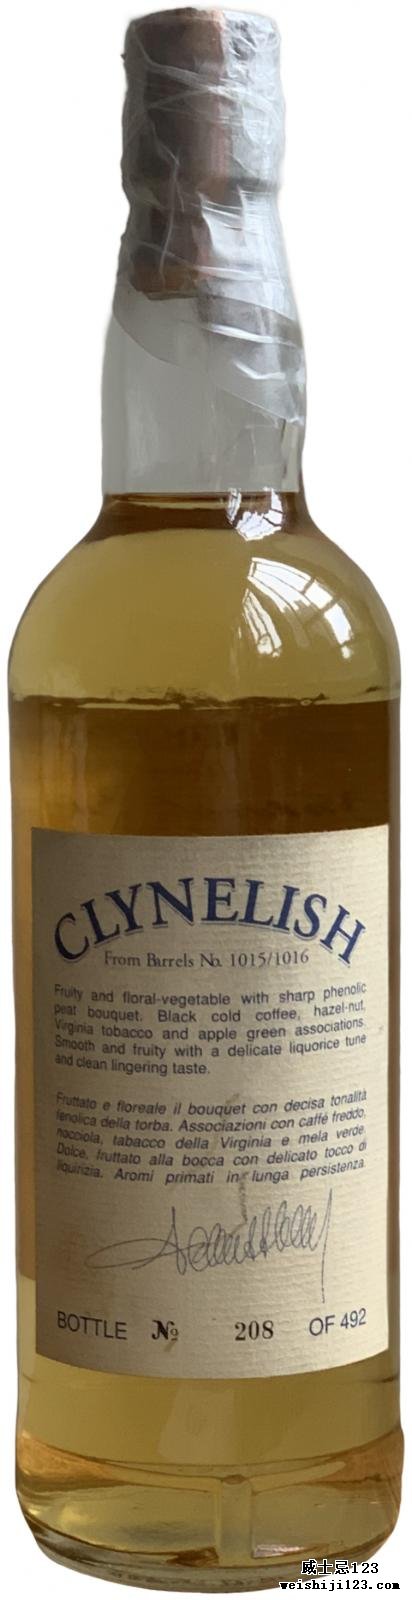 Clynelish 1990 Sa